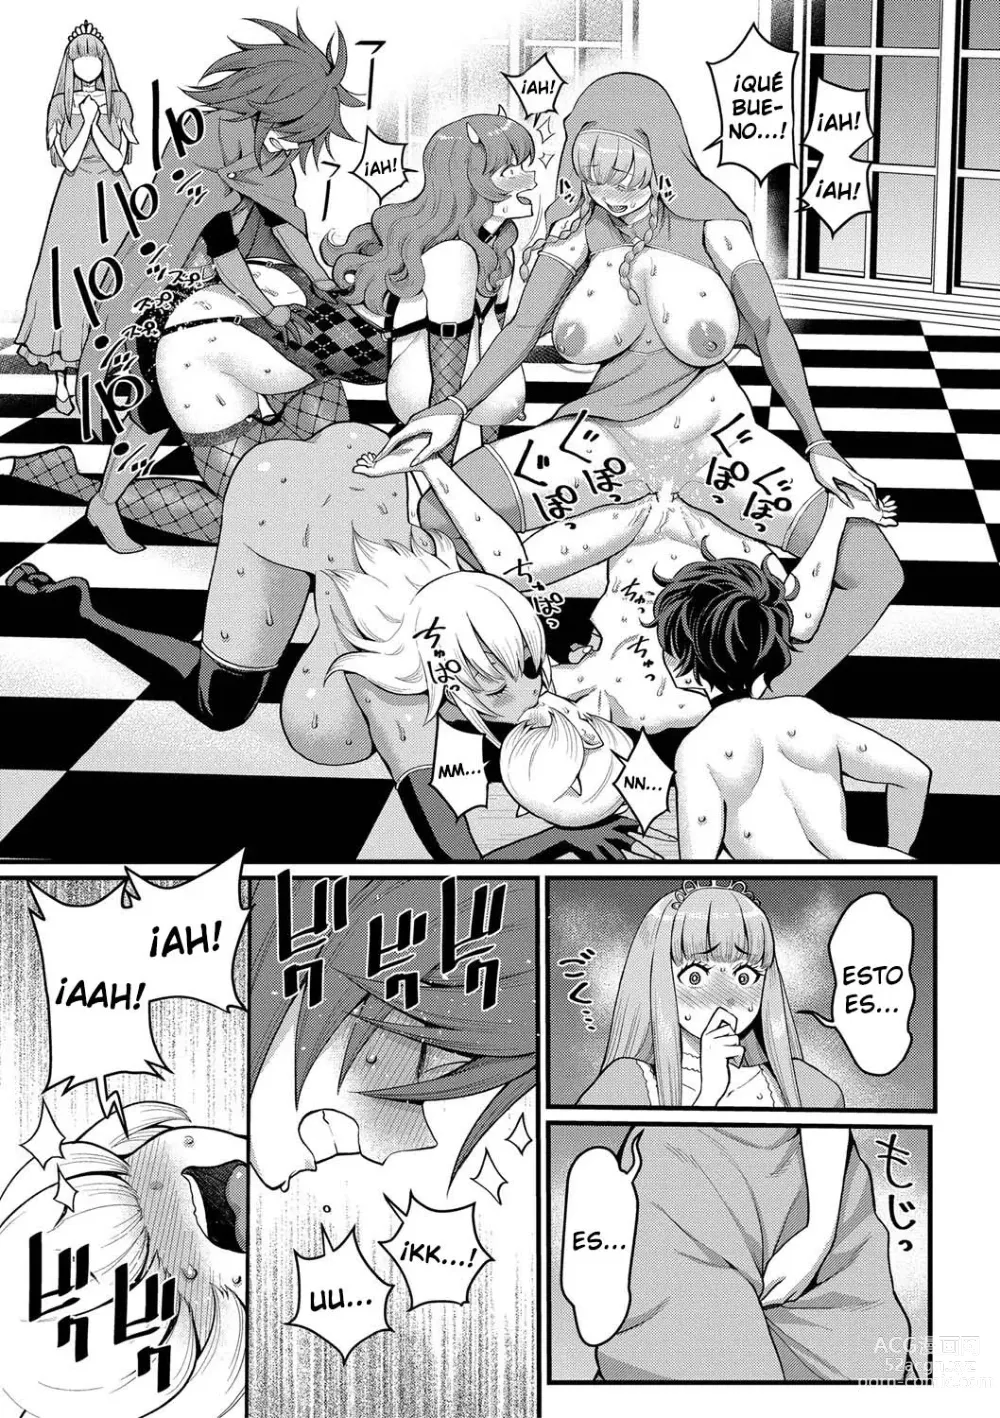 Page 182 of manga Quiero ser tu madre